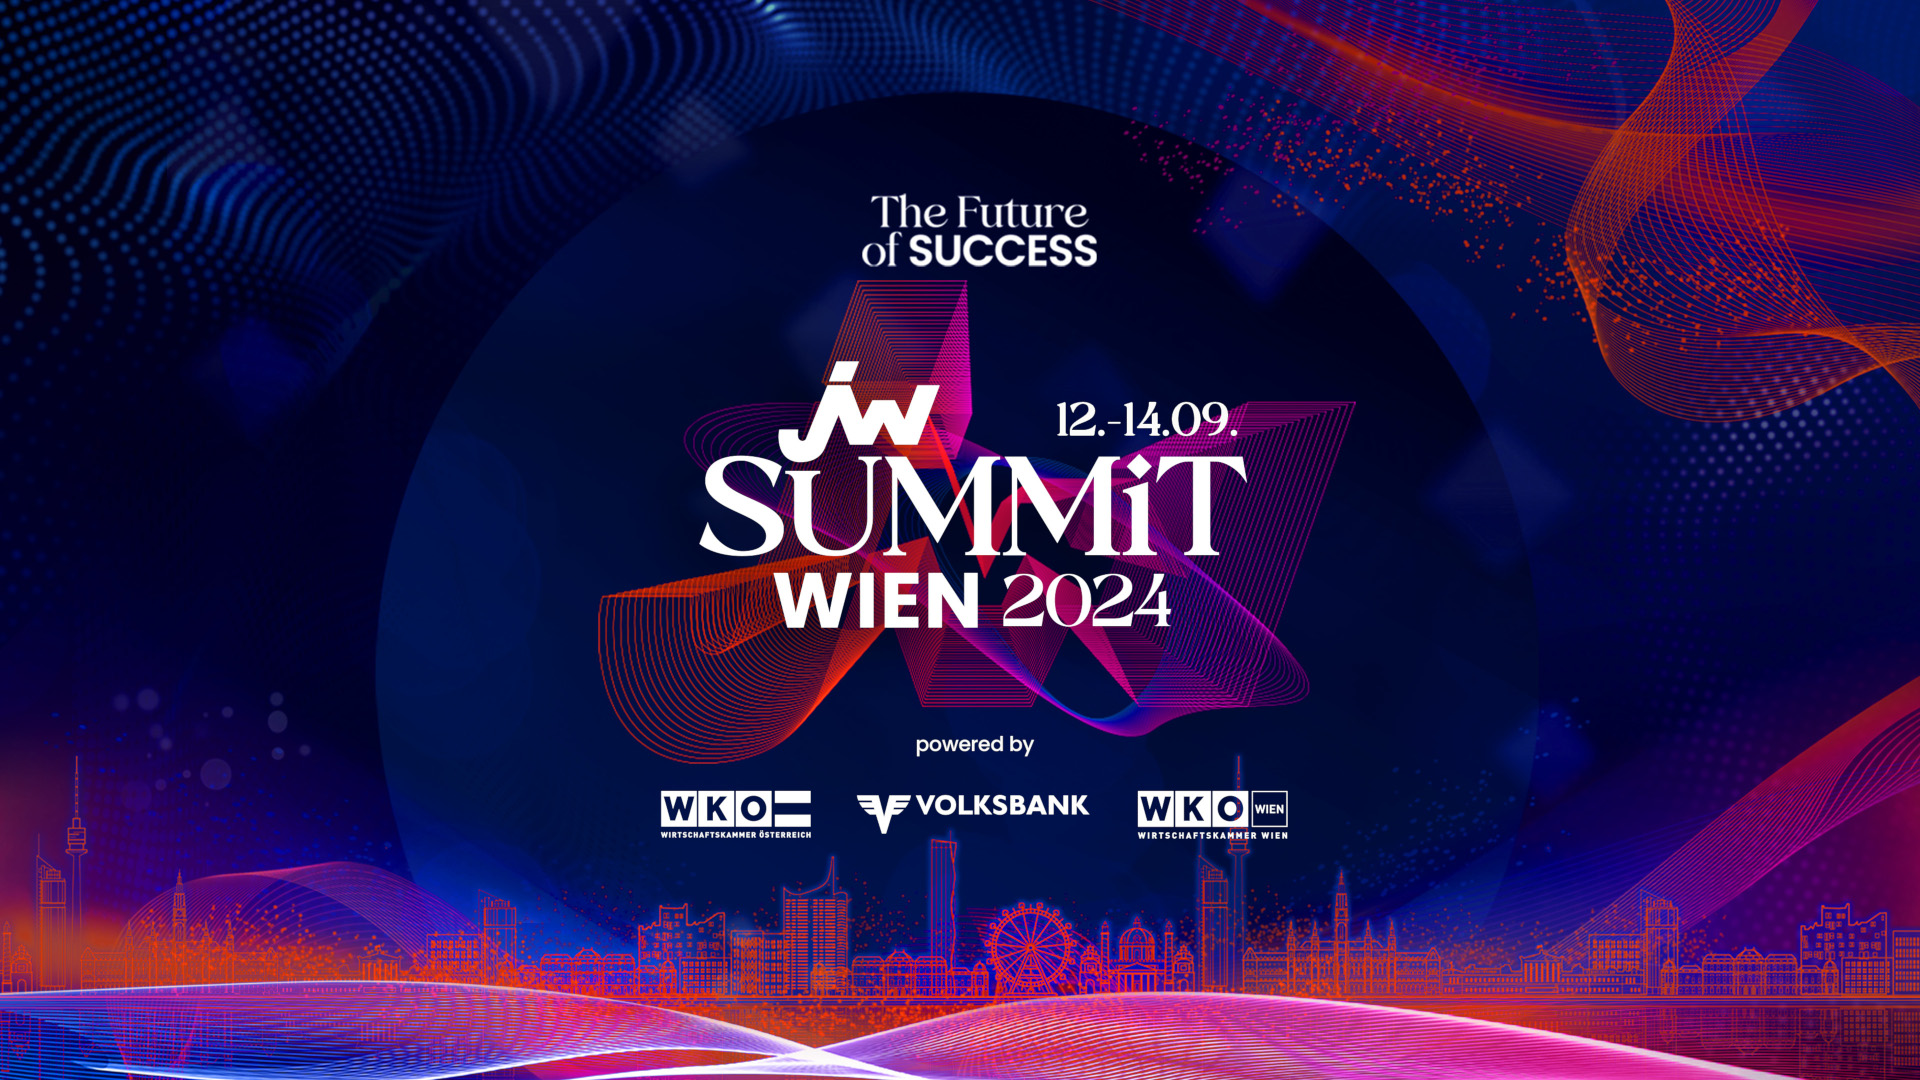 JW-SUMMIT-WIEN-2024-wko-volksbank